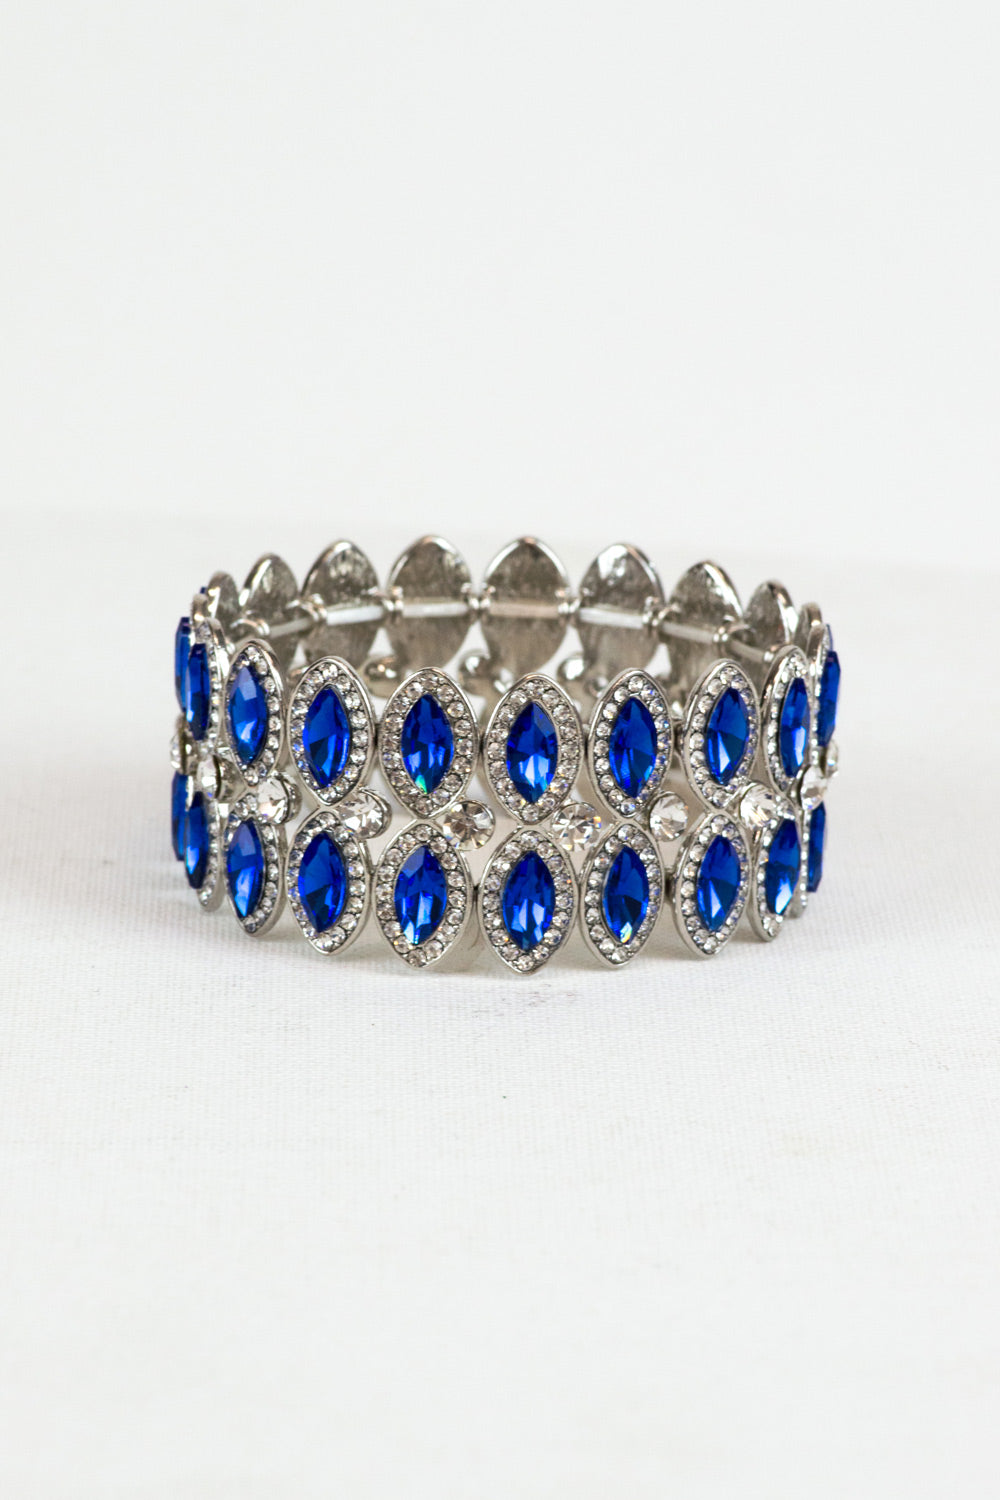 Royal Blue Statement Bracelet for Prom